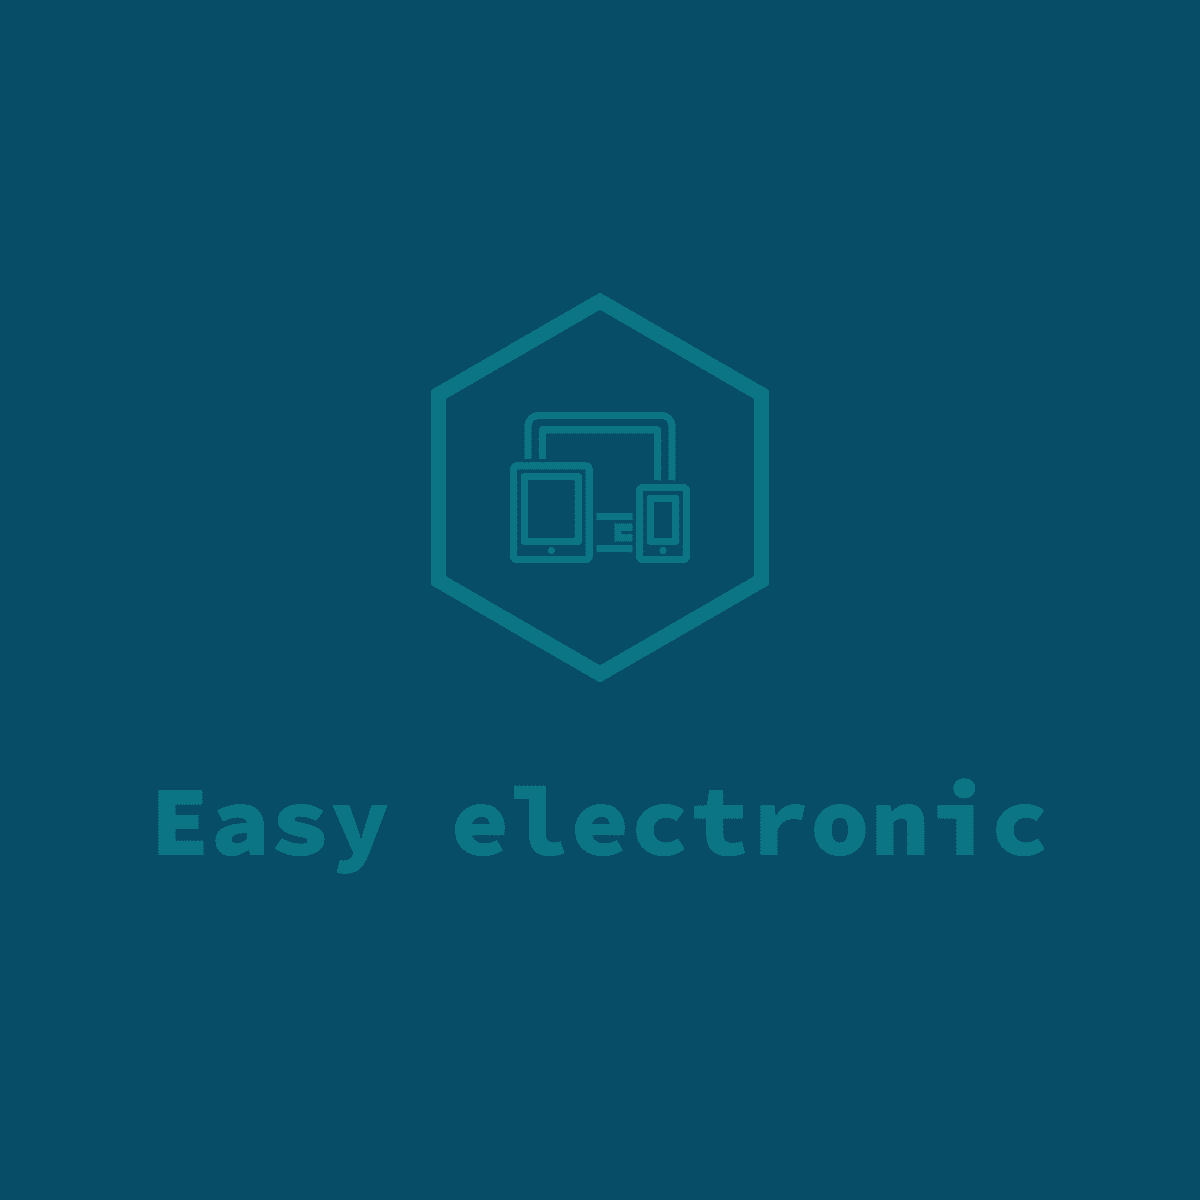 Easy electronic